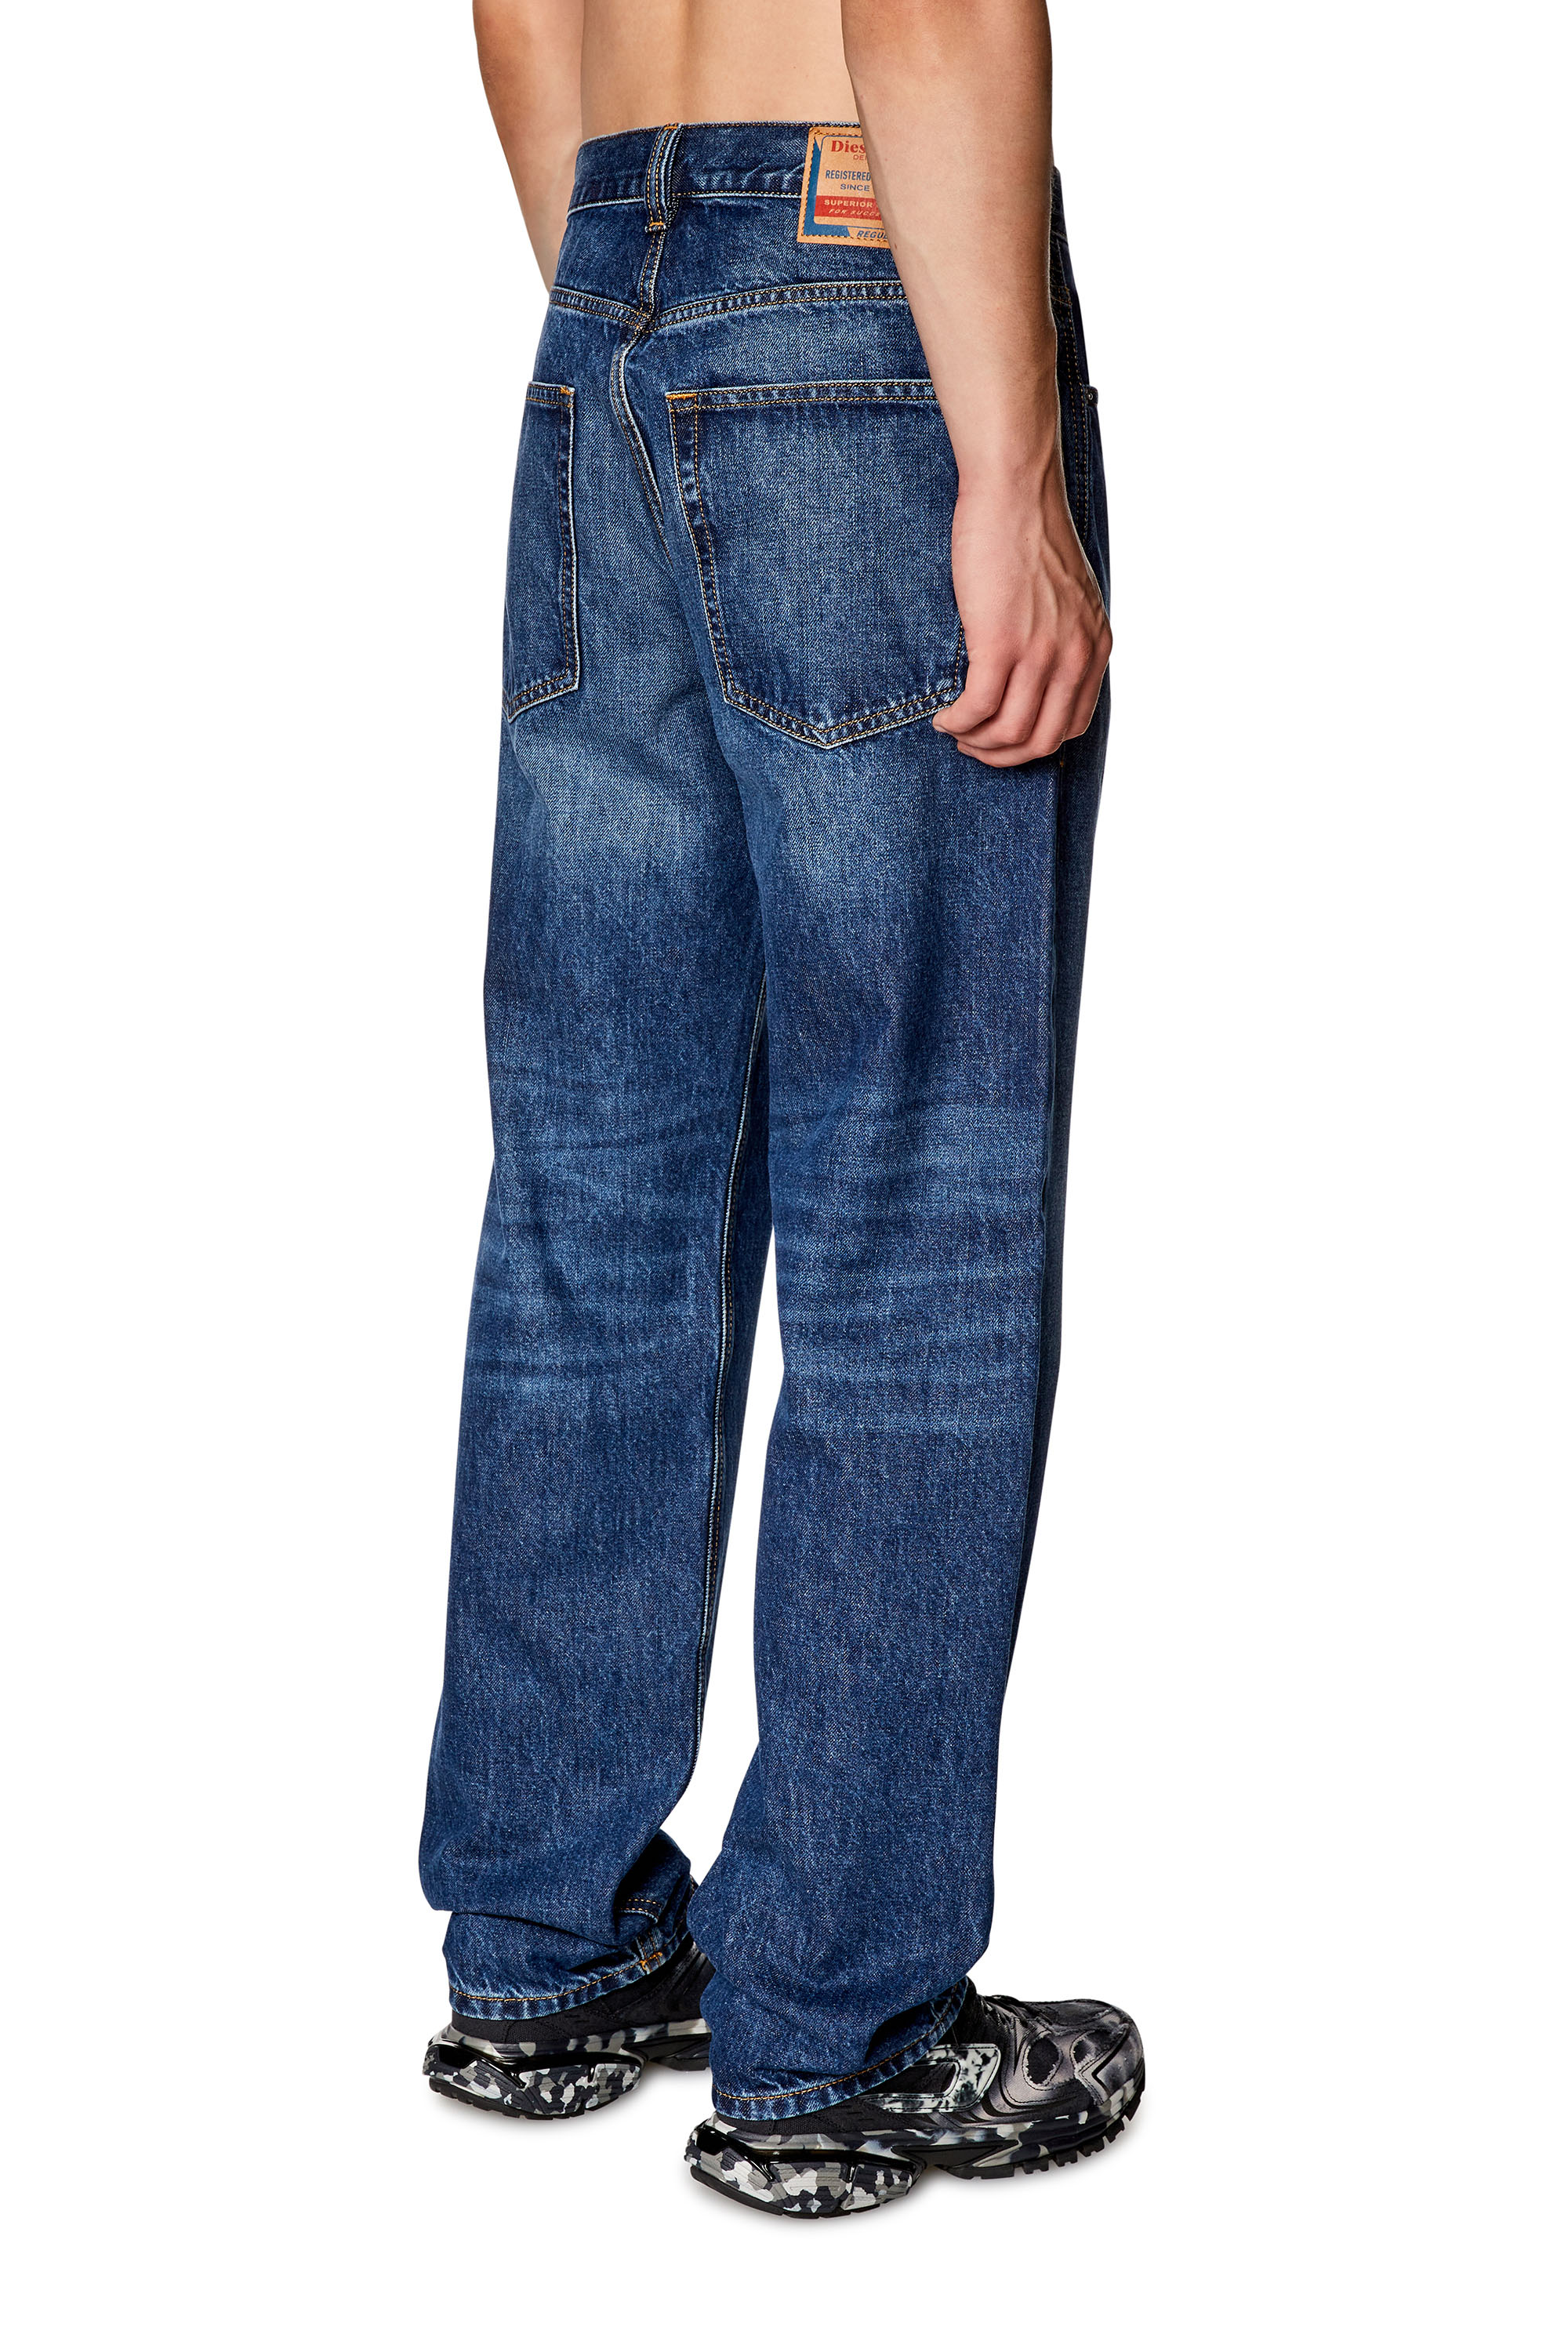 Diesel: Baggy Jeans | Diesel Online Store